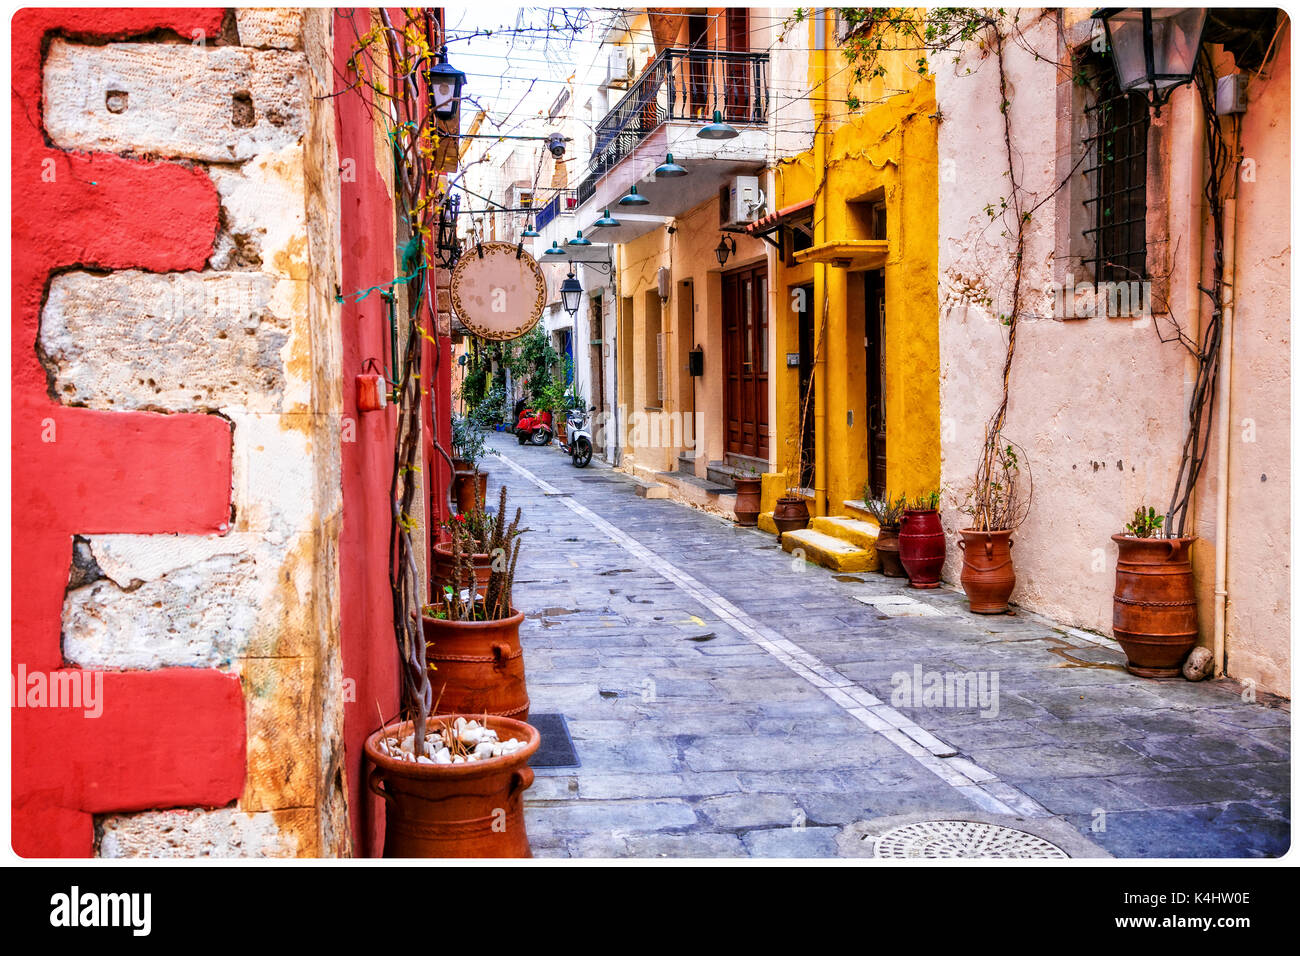 Vieilles rues colorées de charme de la vieille ville de Rethymno en Crète.Grèce Banque D'Images